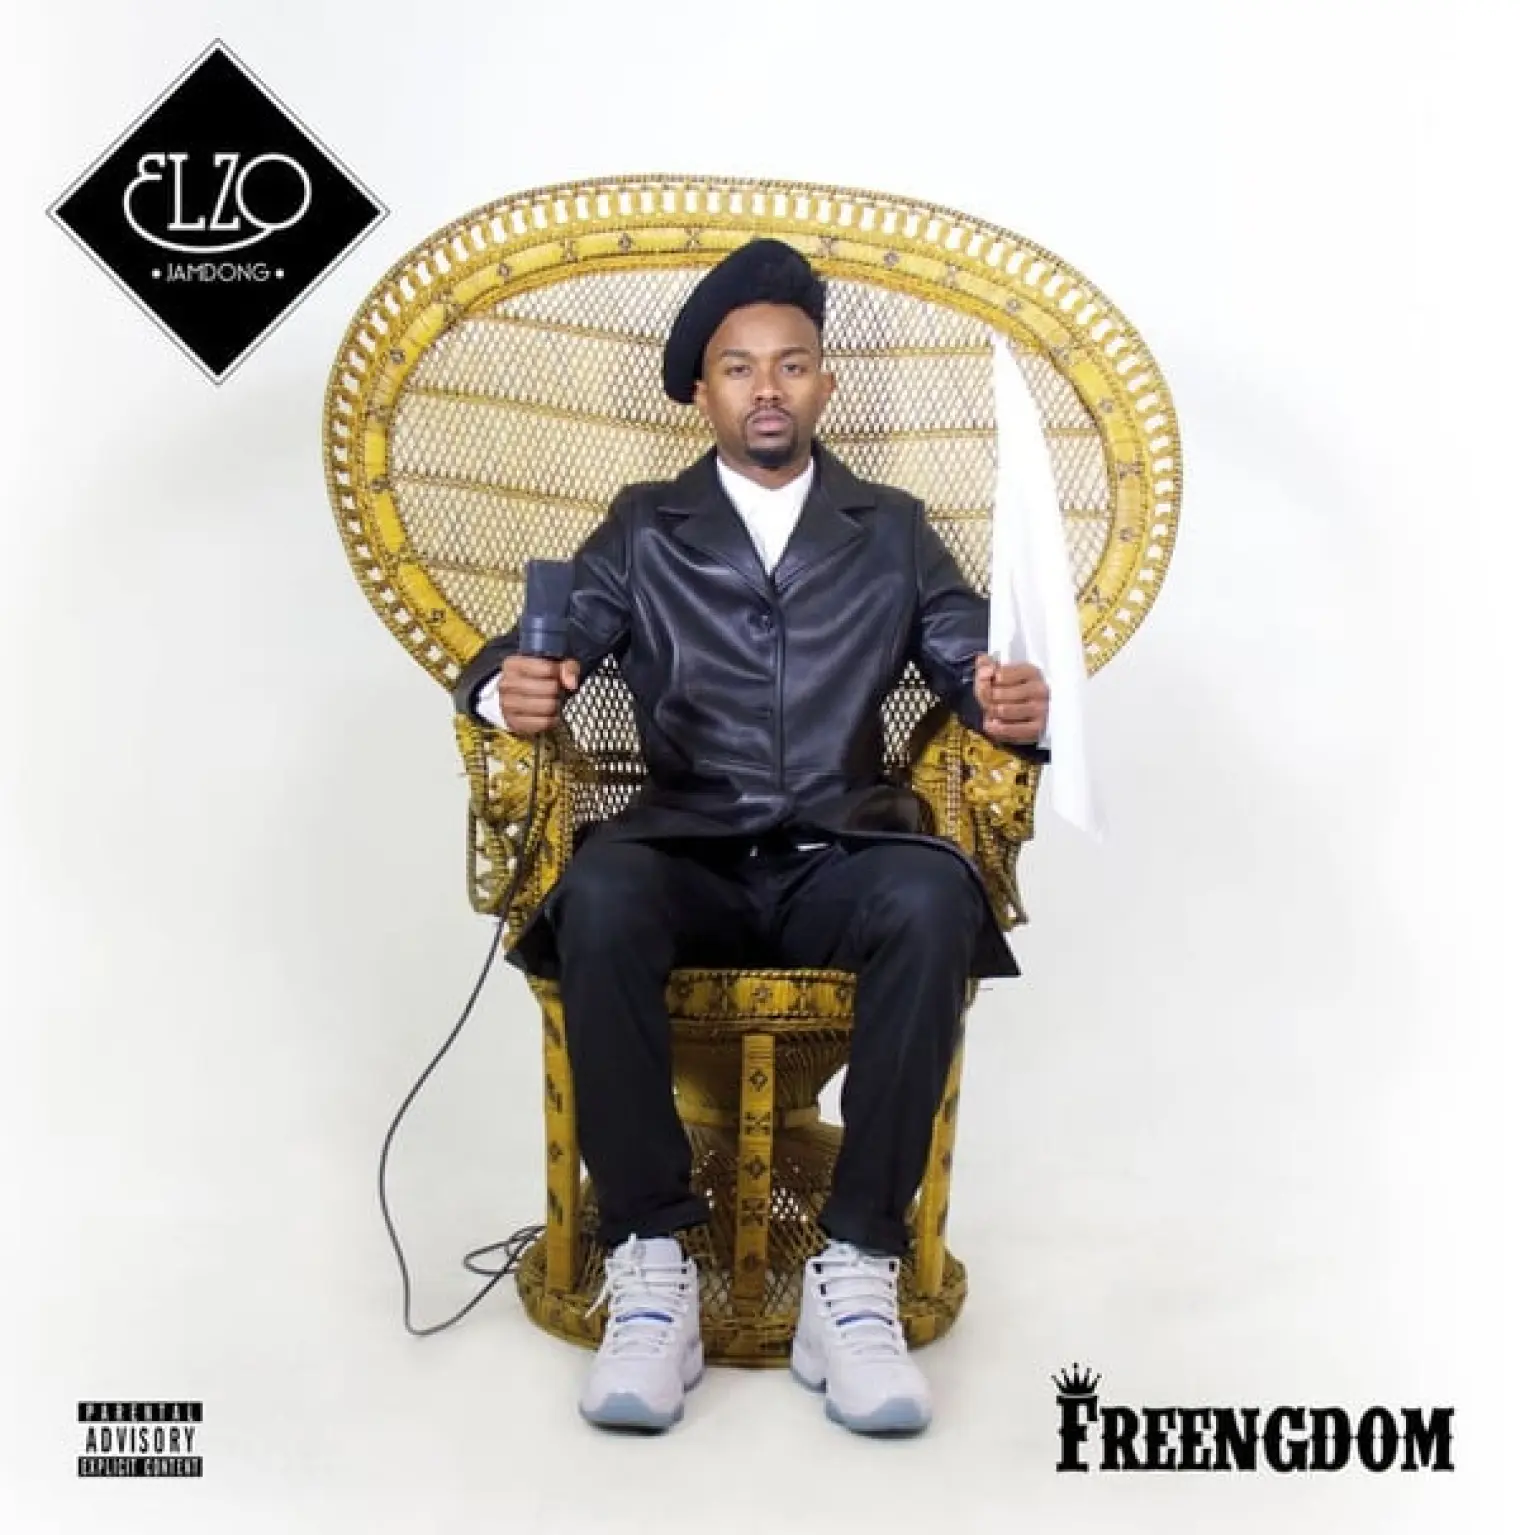 FREENGDOM -  Elzo Jamdong 